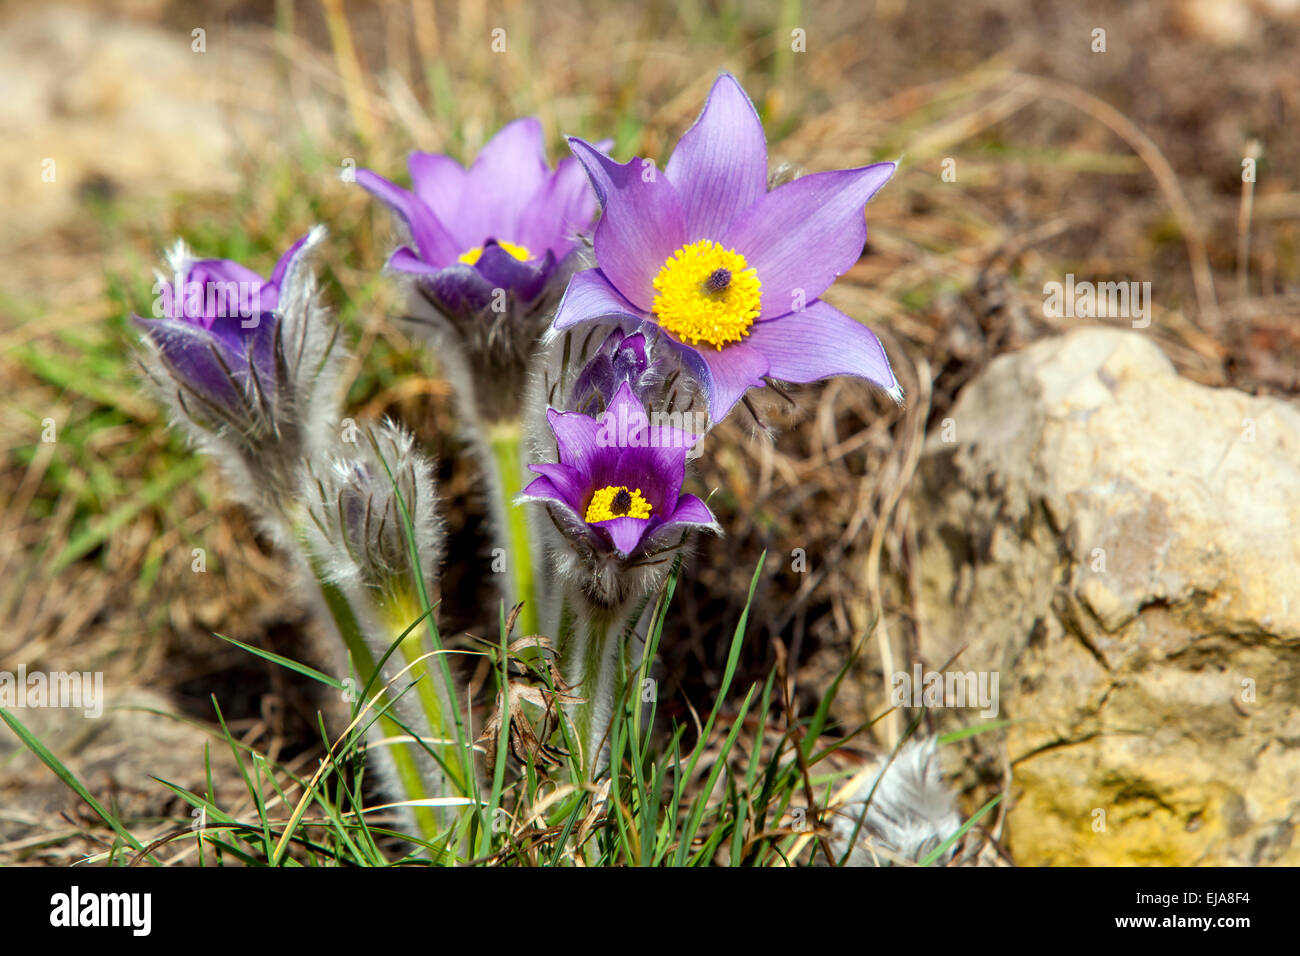 Pasque fiore, Pulsatilla grandis vulgaris giardino prato fiori, primavera fiore giardino Foto Stock